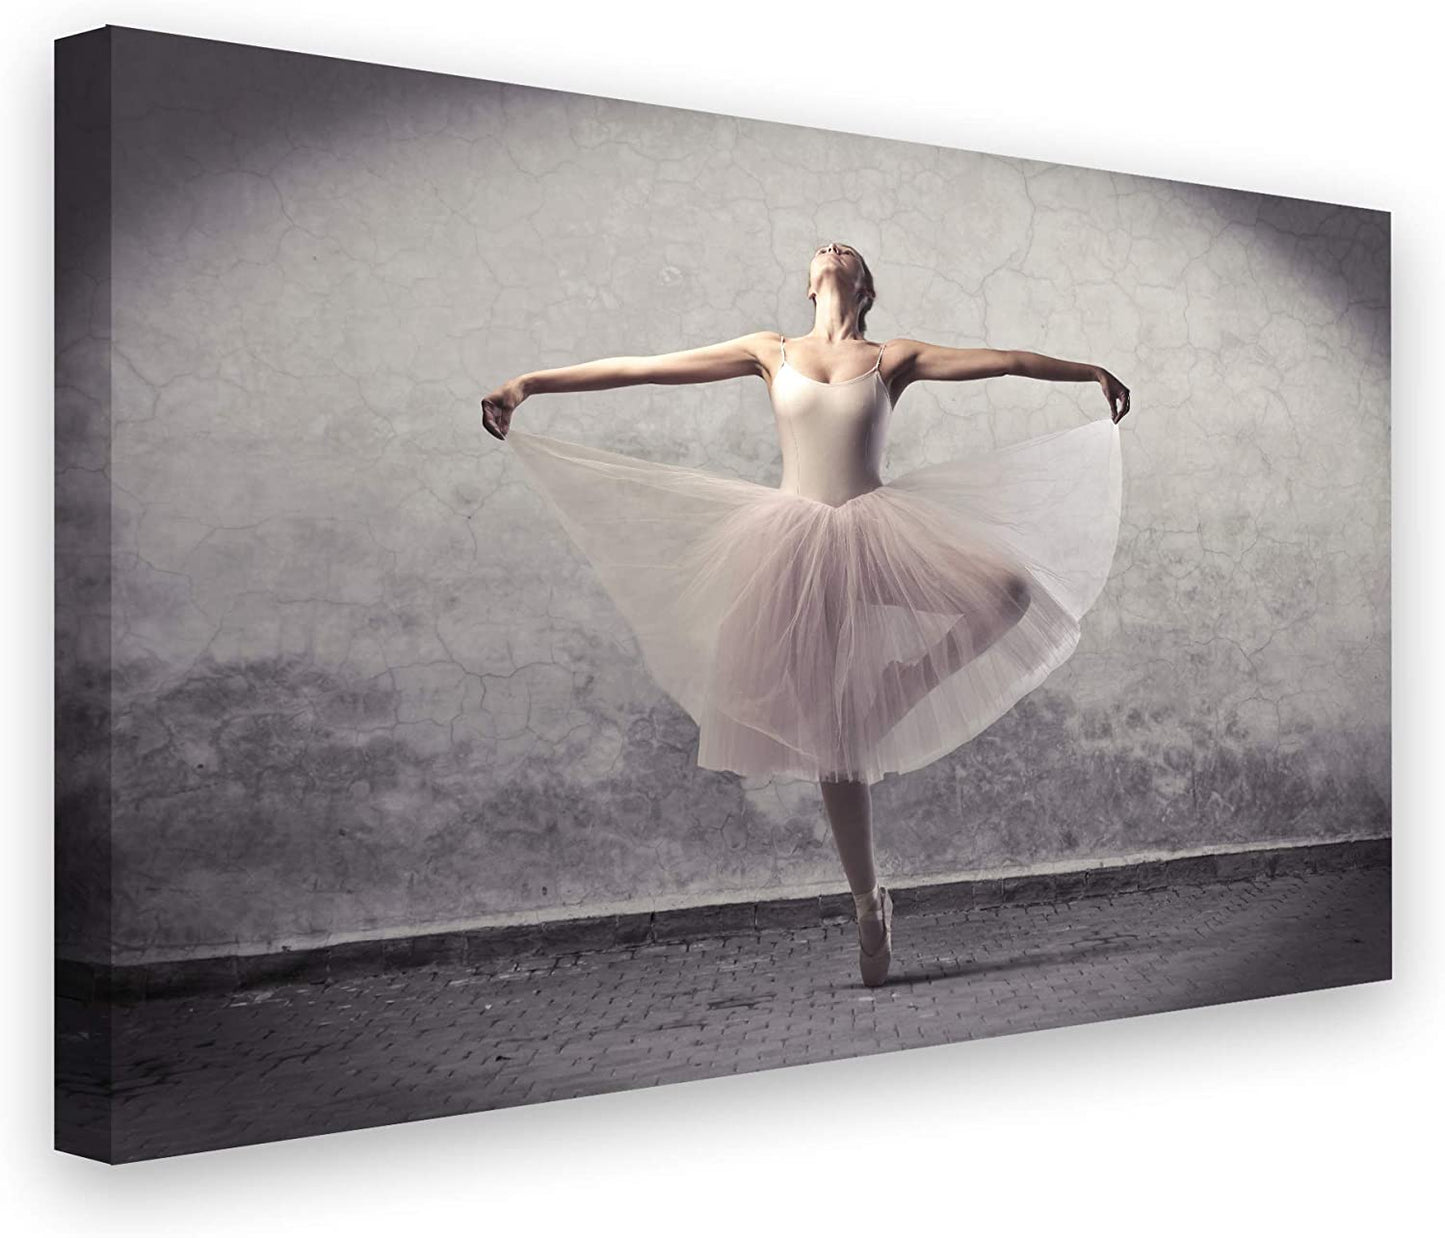 PICSonPAPER Leinwandbild Ballett, 70 cm x 50 cm, Dekoration, Kunstdruck, Wandbild, Leinwand Ballerina, Balletttänzerin